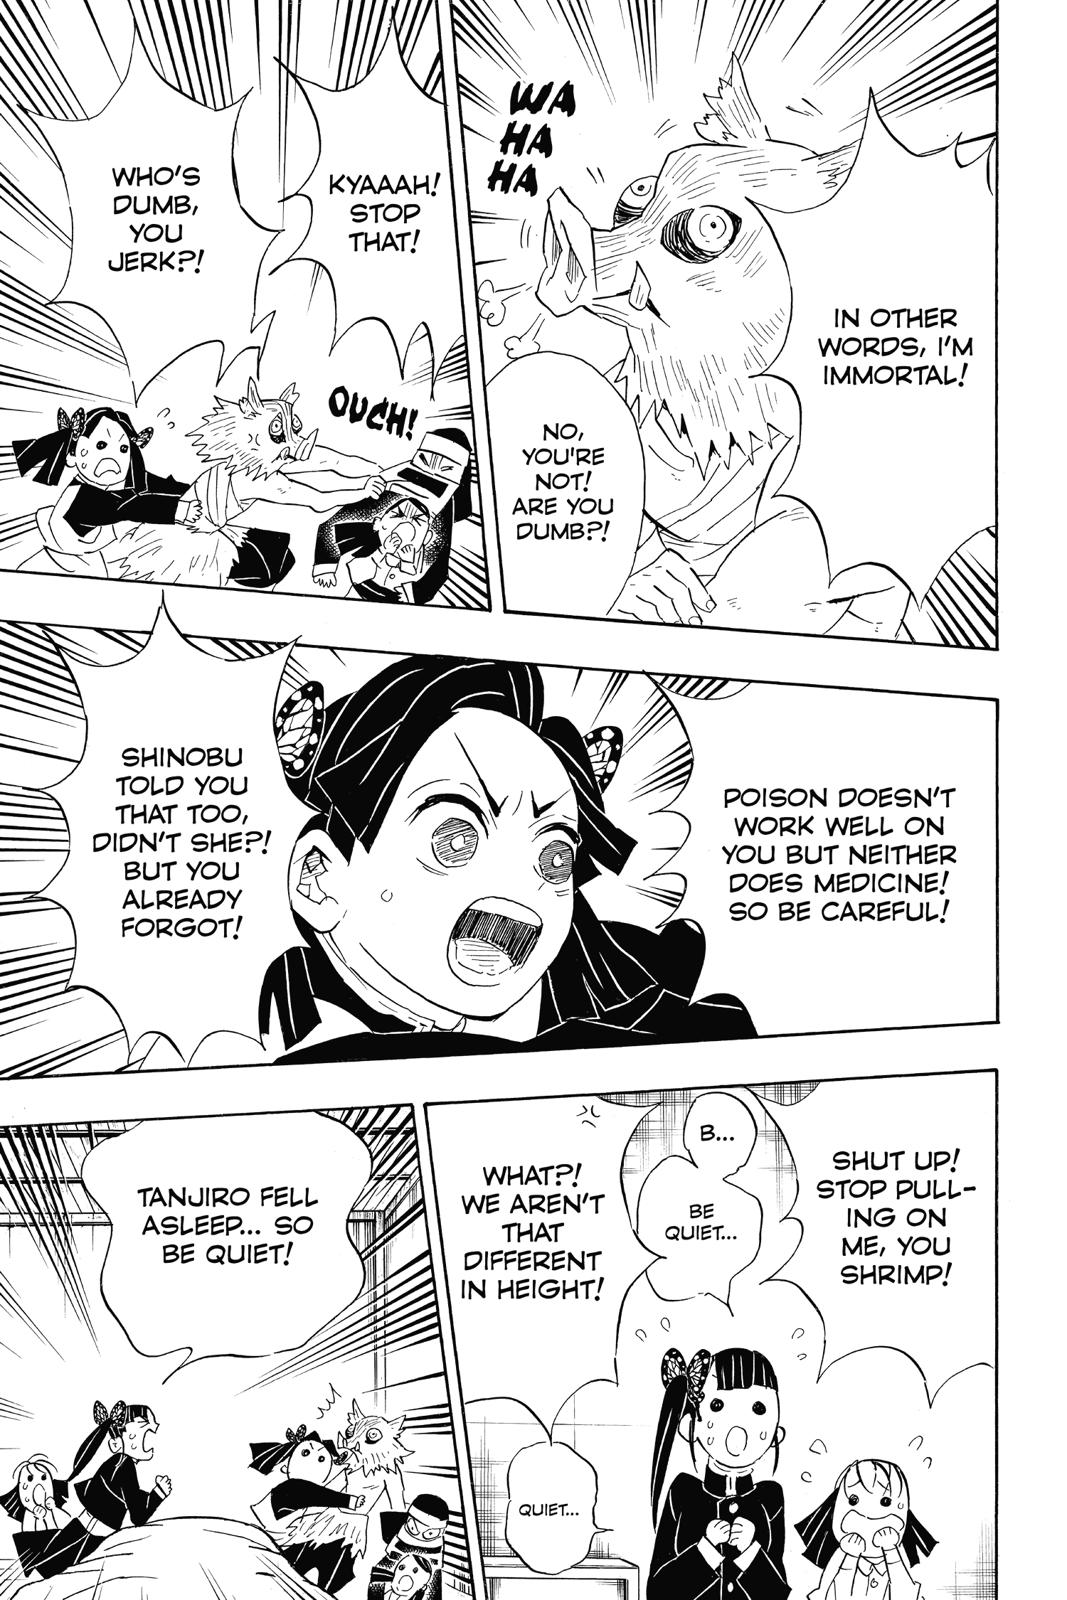 Demon Slayer Manga Manga Chapter - 100 - image 11